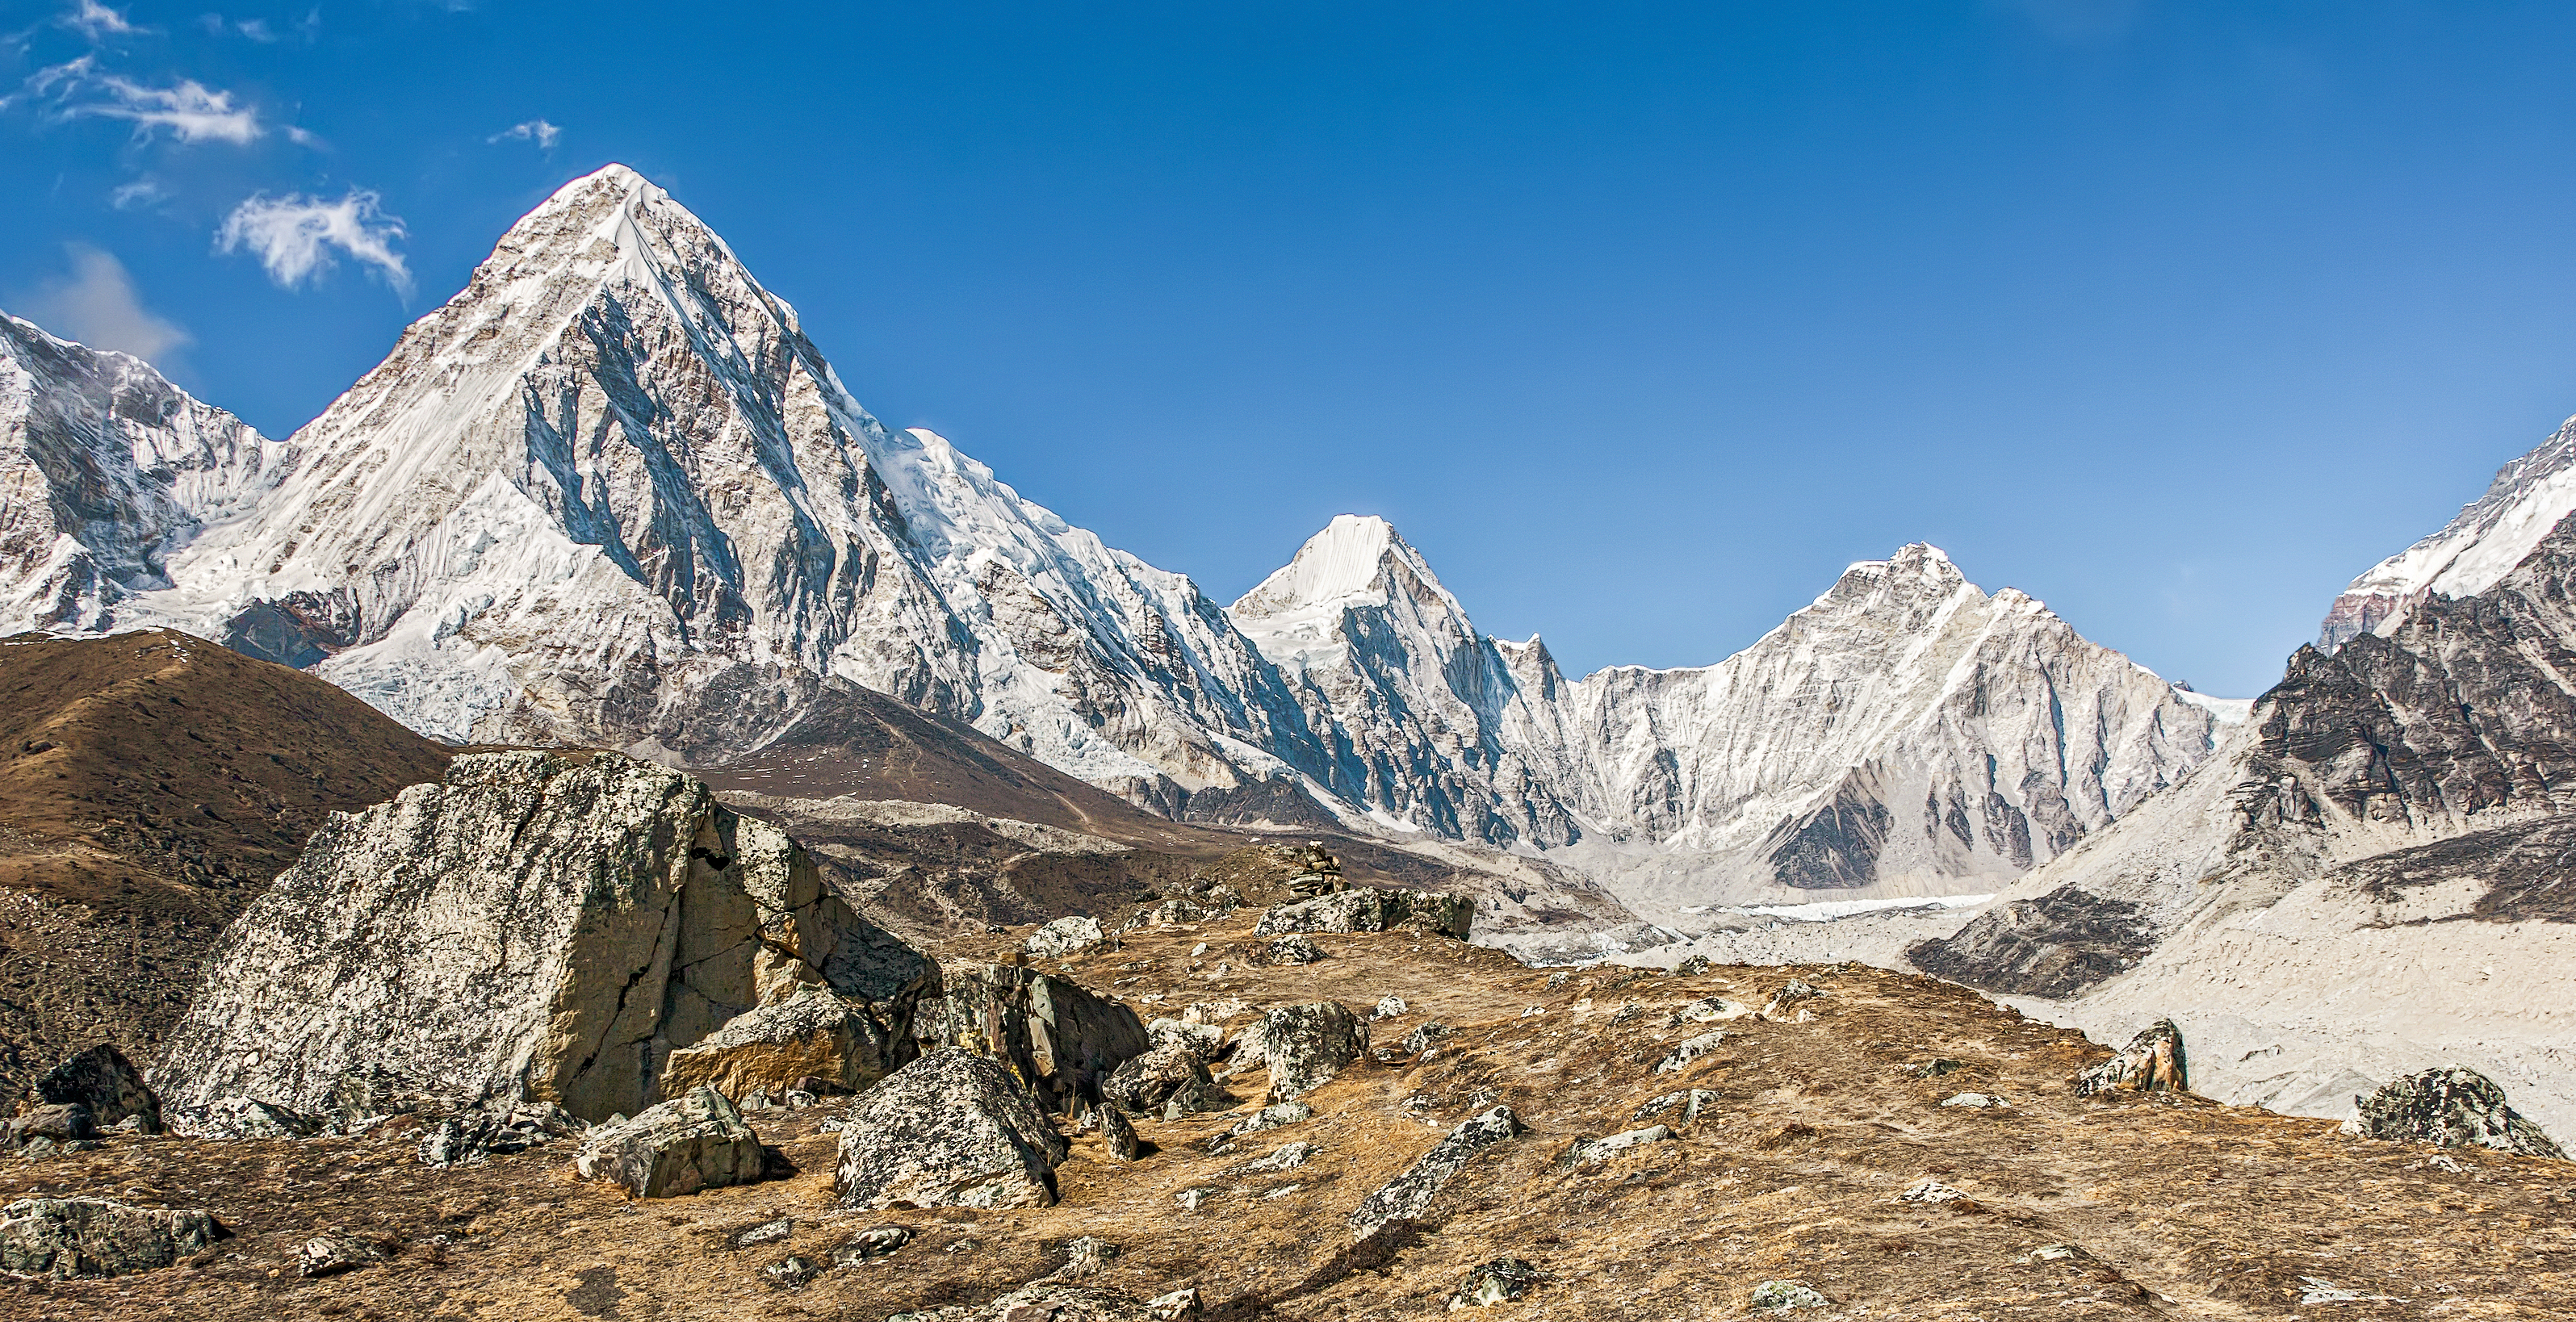 34 групи от 289 души са получили разрешение да изкачат Еверест миналата година